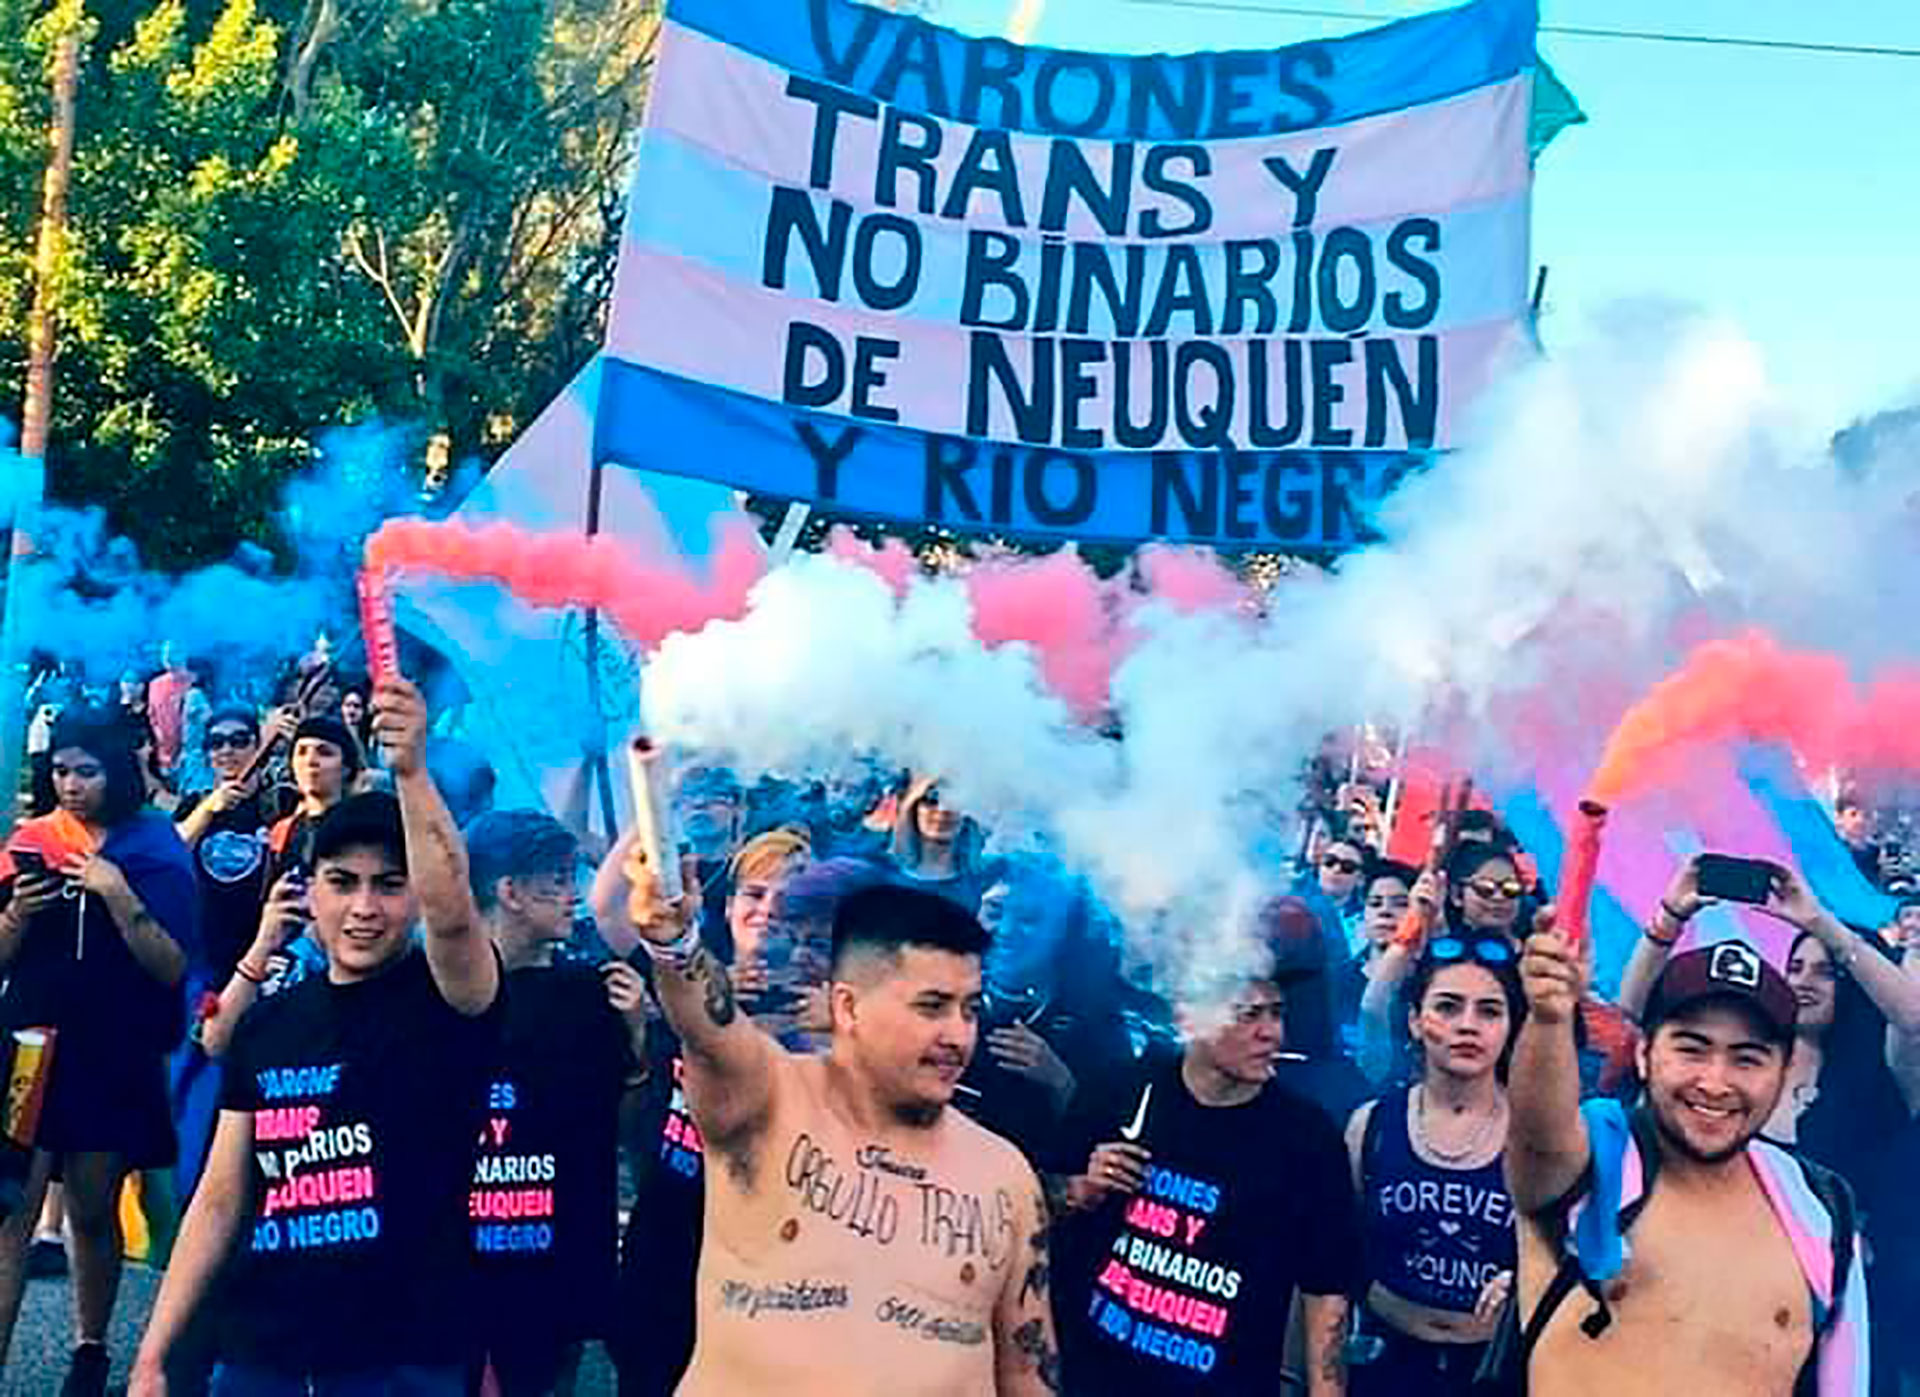 Benjamín junto a sus compañeros de “Varones Trans y No Binarios de Neuquén y Río Negro” 